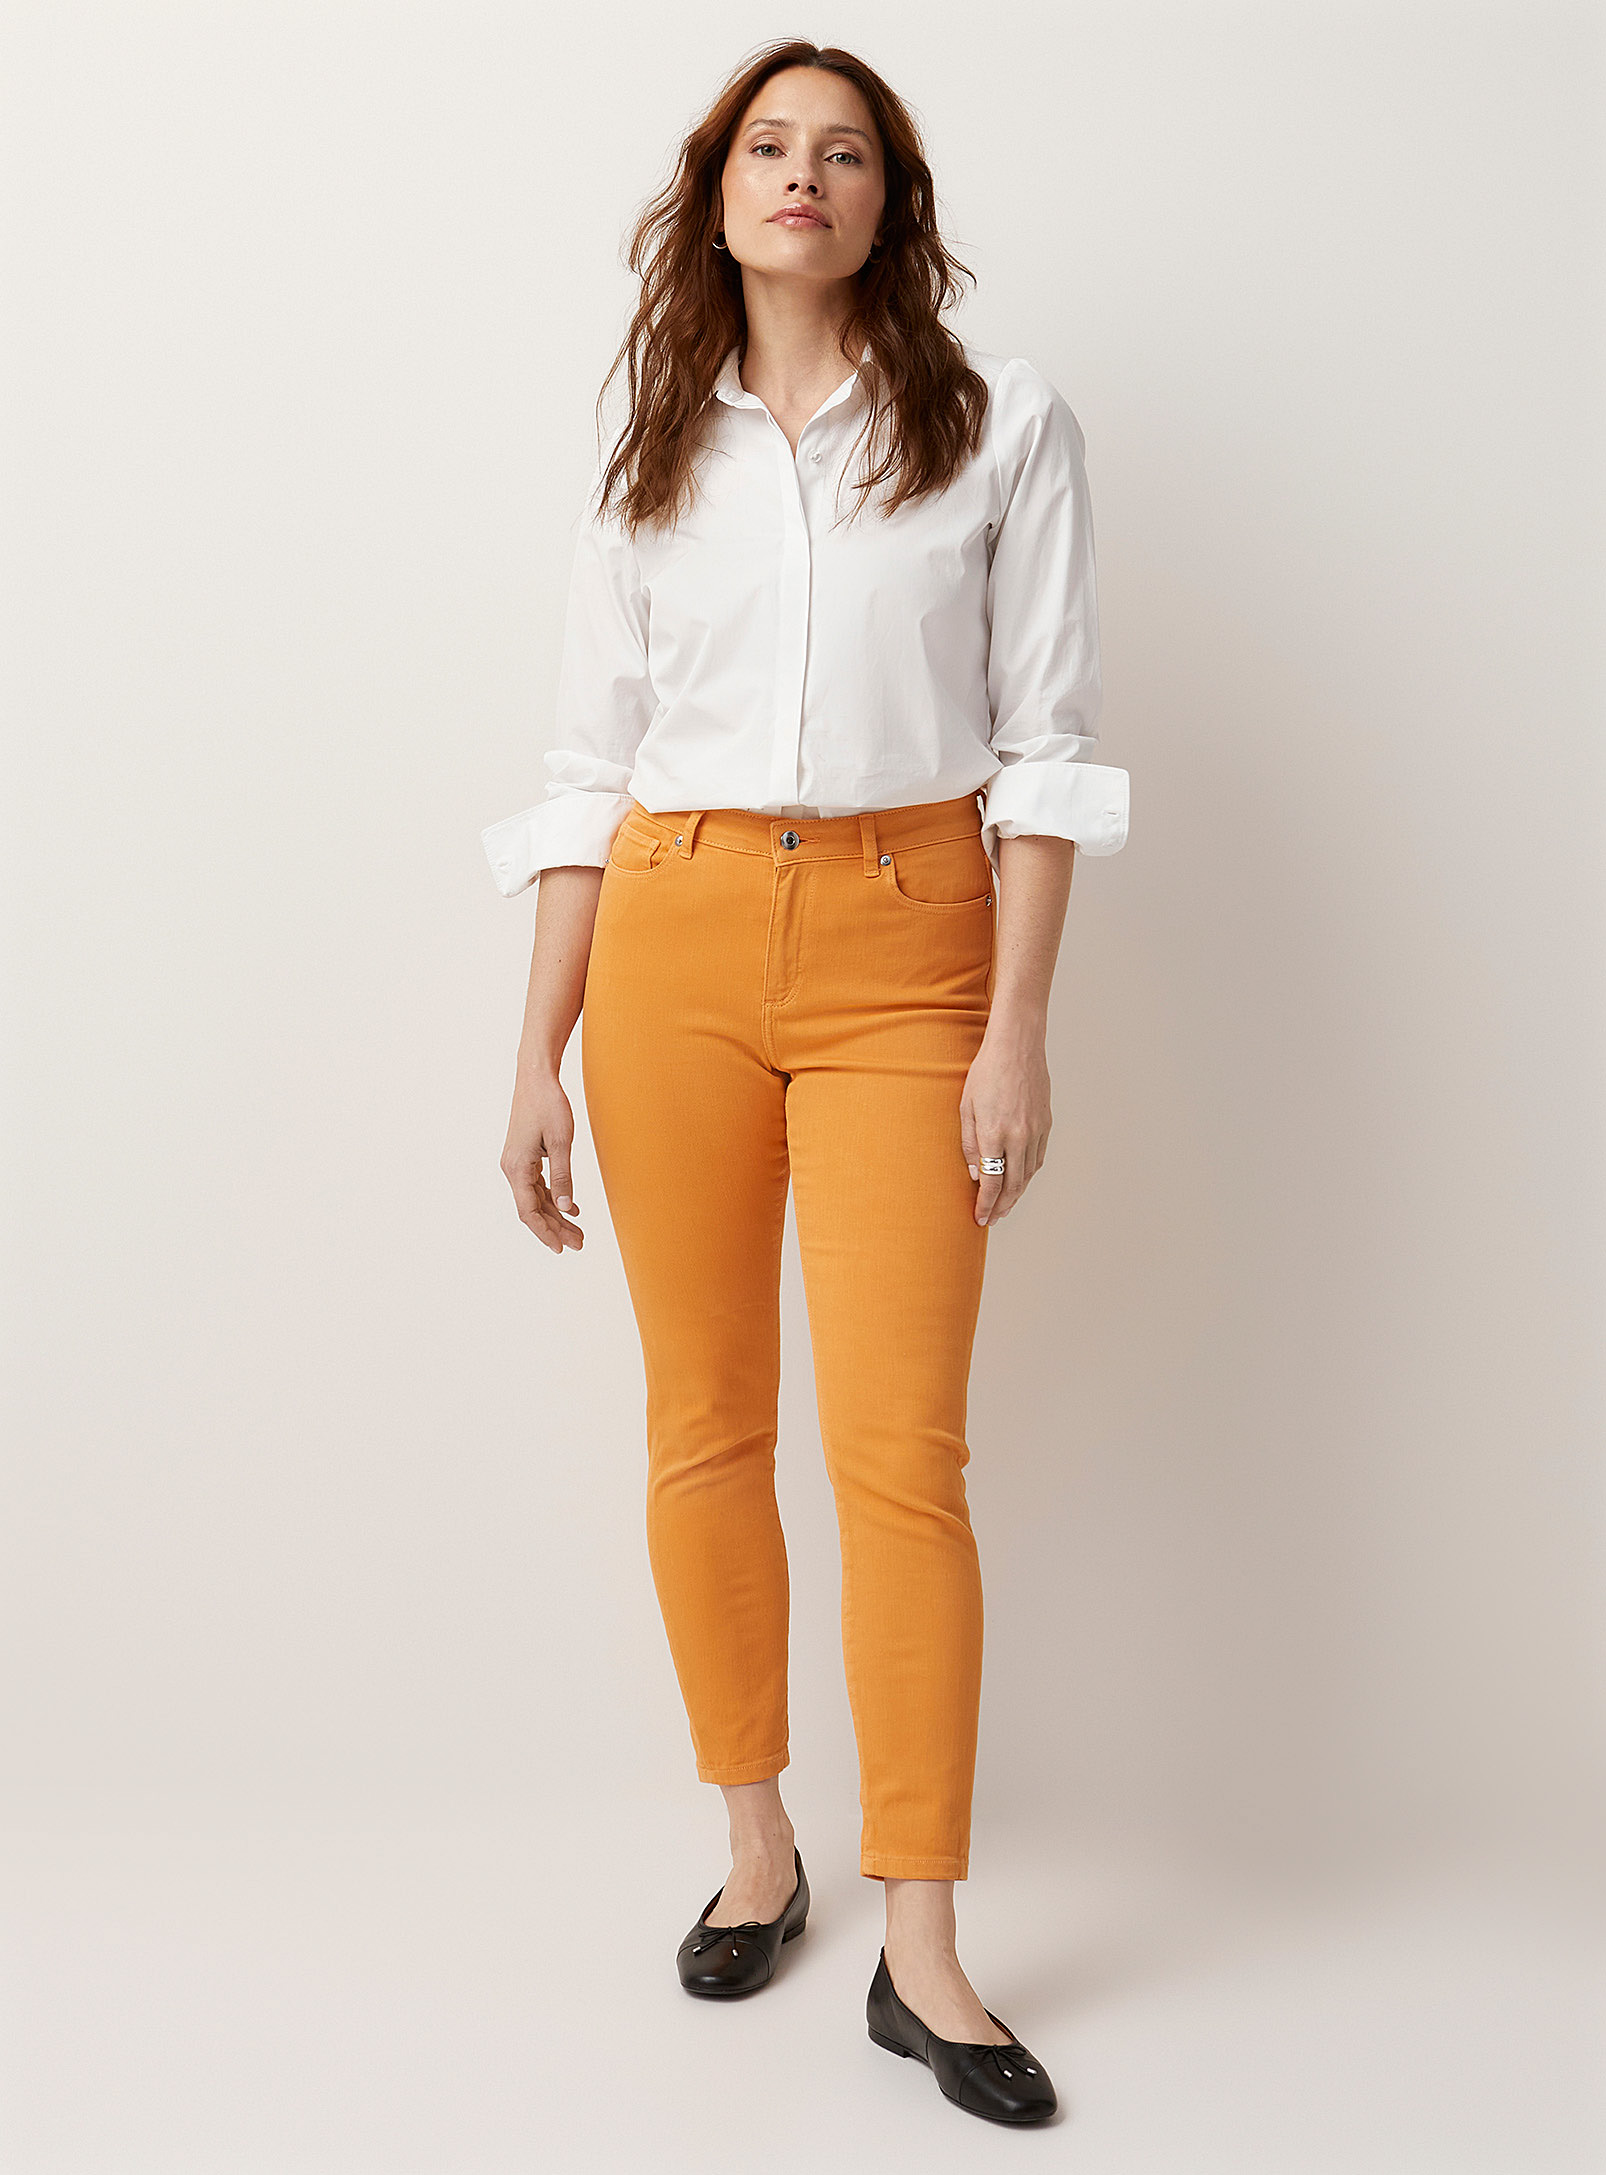 Contemporaine Stylish Colour Stretch Skinny Jean In Orange